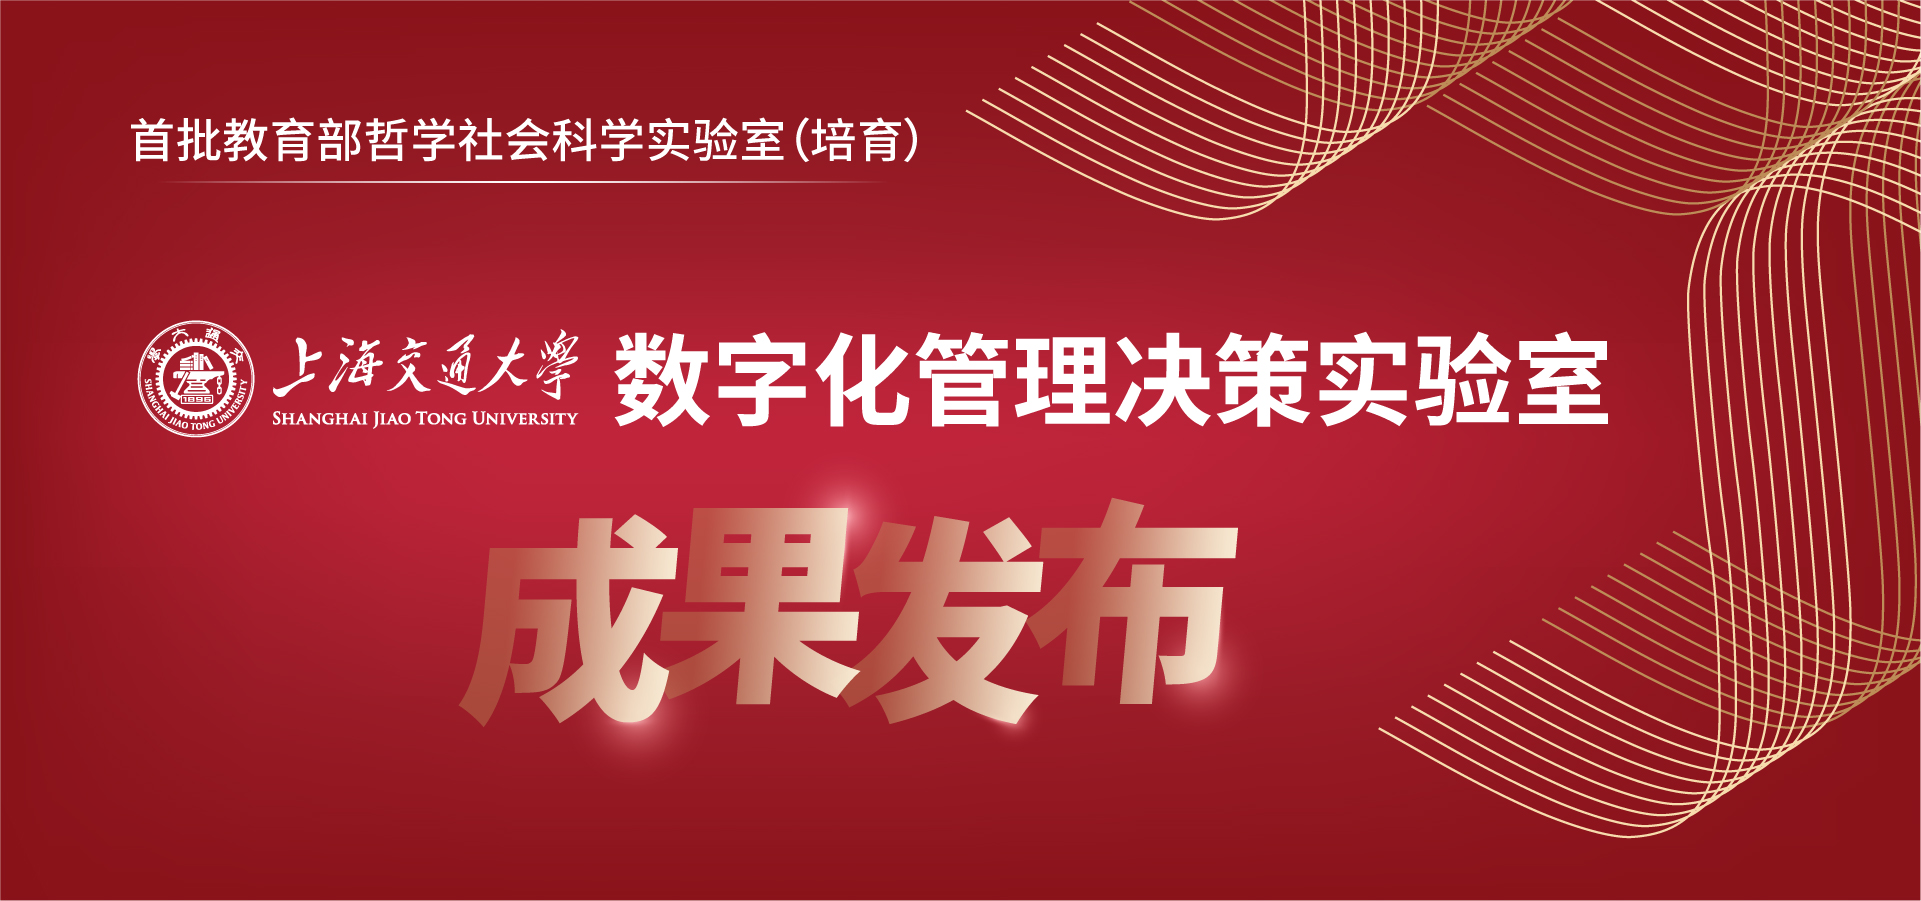 上海交通大学数字化管理决策实验室金耀辉教授团队开发<br/>上海疫情开源可视化平台“Shanghai COVID-19 ReOpen”